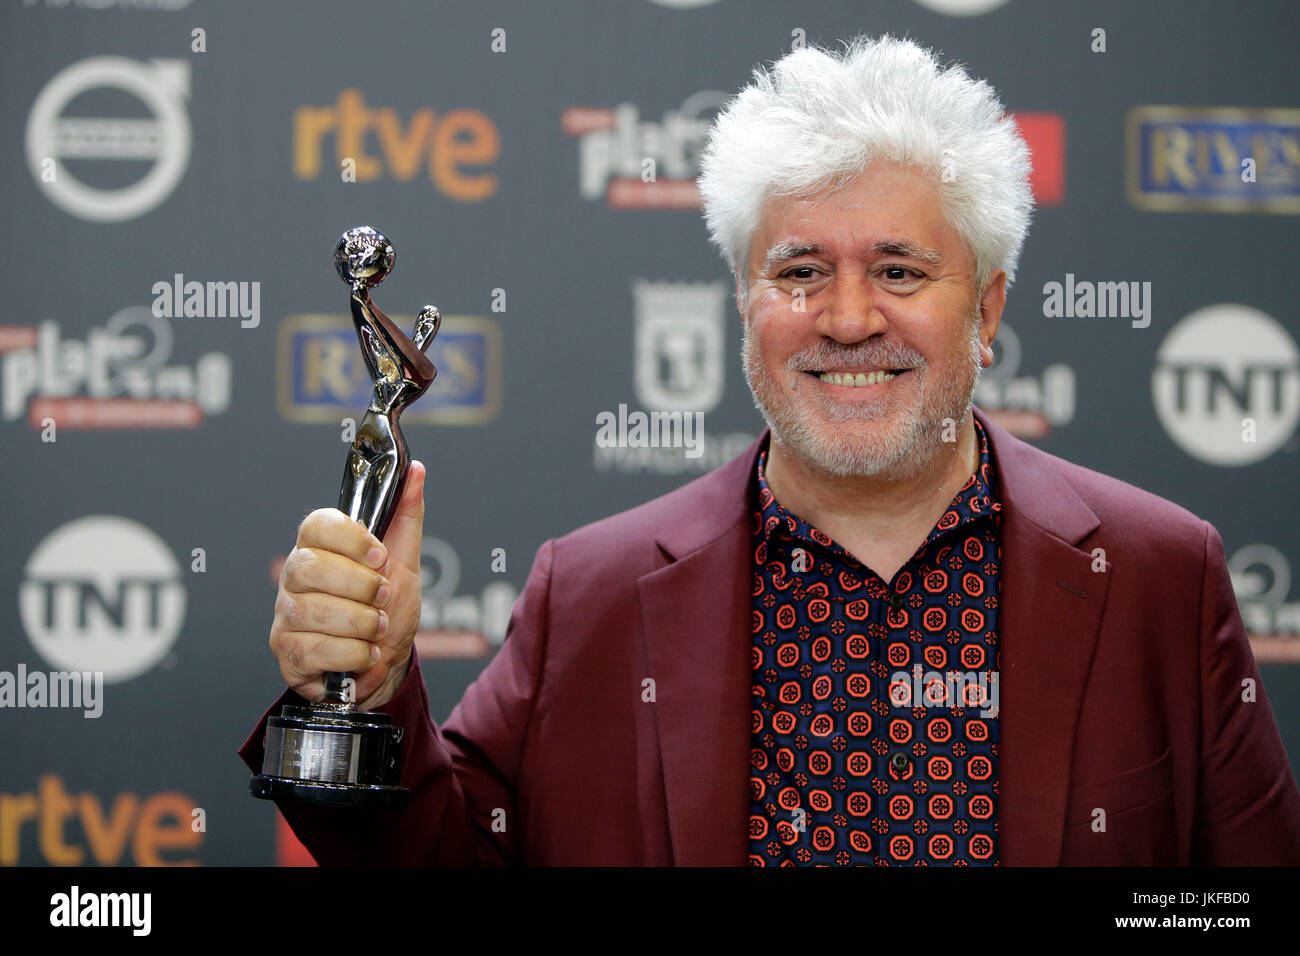 Pedro Almodóvar durante el photocall premios de platino 2017 en Madrid el sábado 22 de julio de 2017. Foto de stock